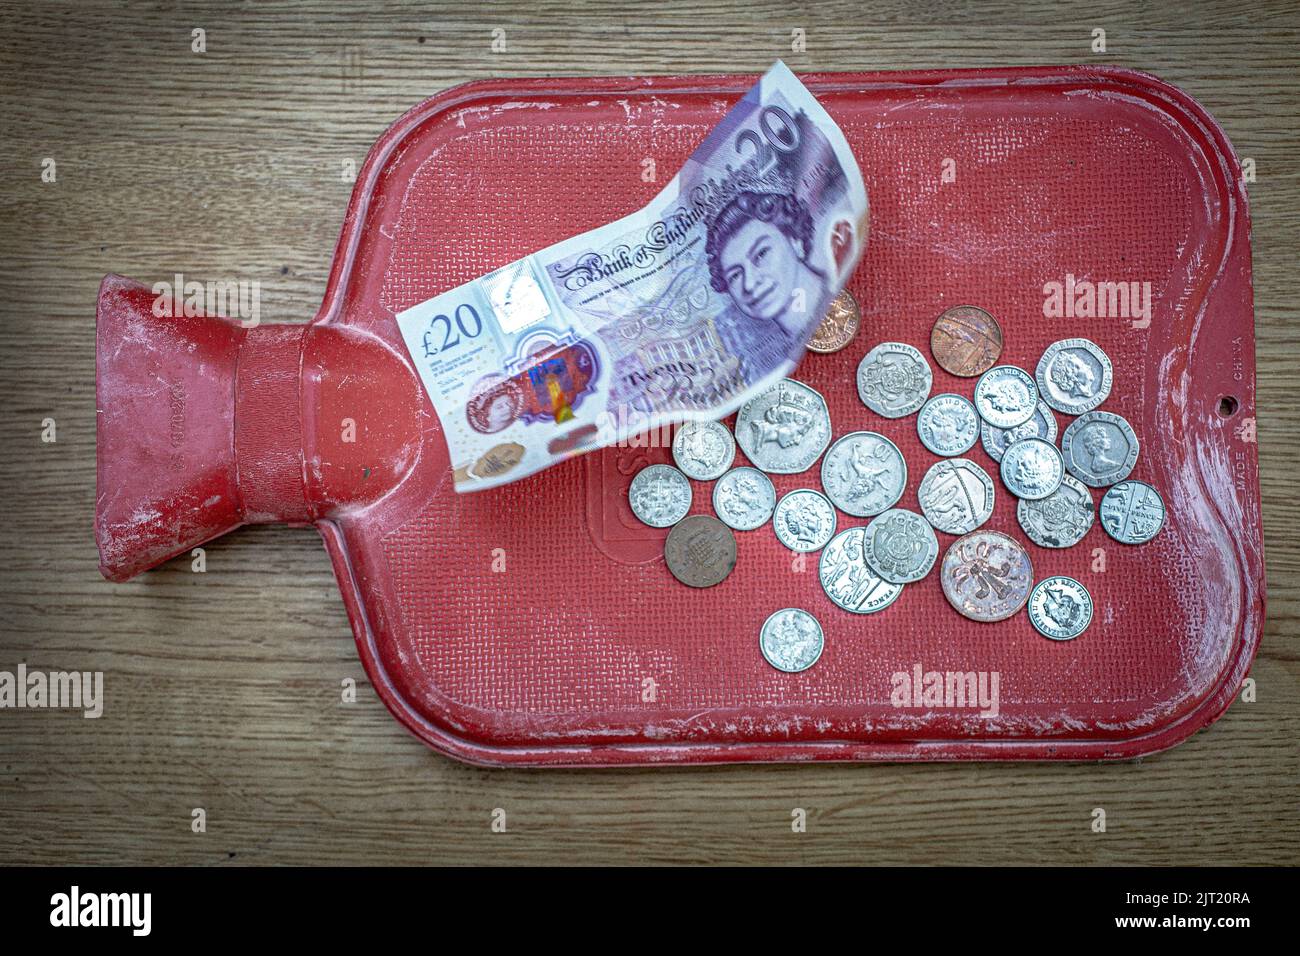 Gros plan d'une bouteille d'eau chaude et d'une note britannique de £20 et pièces de monnaie comme les billets de carburant fusée Banque D'Images